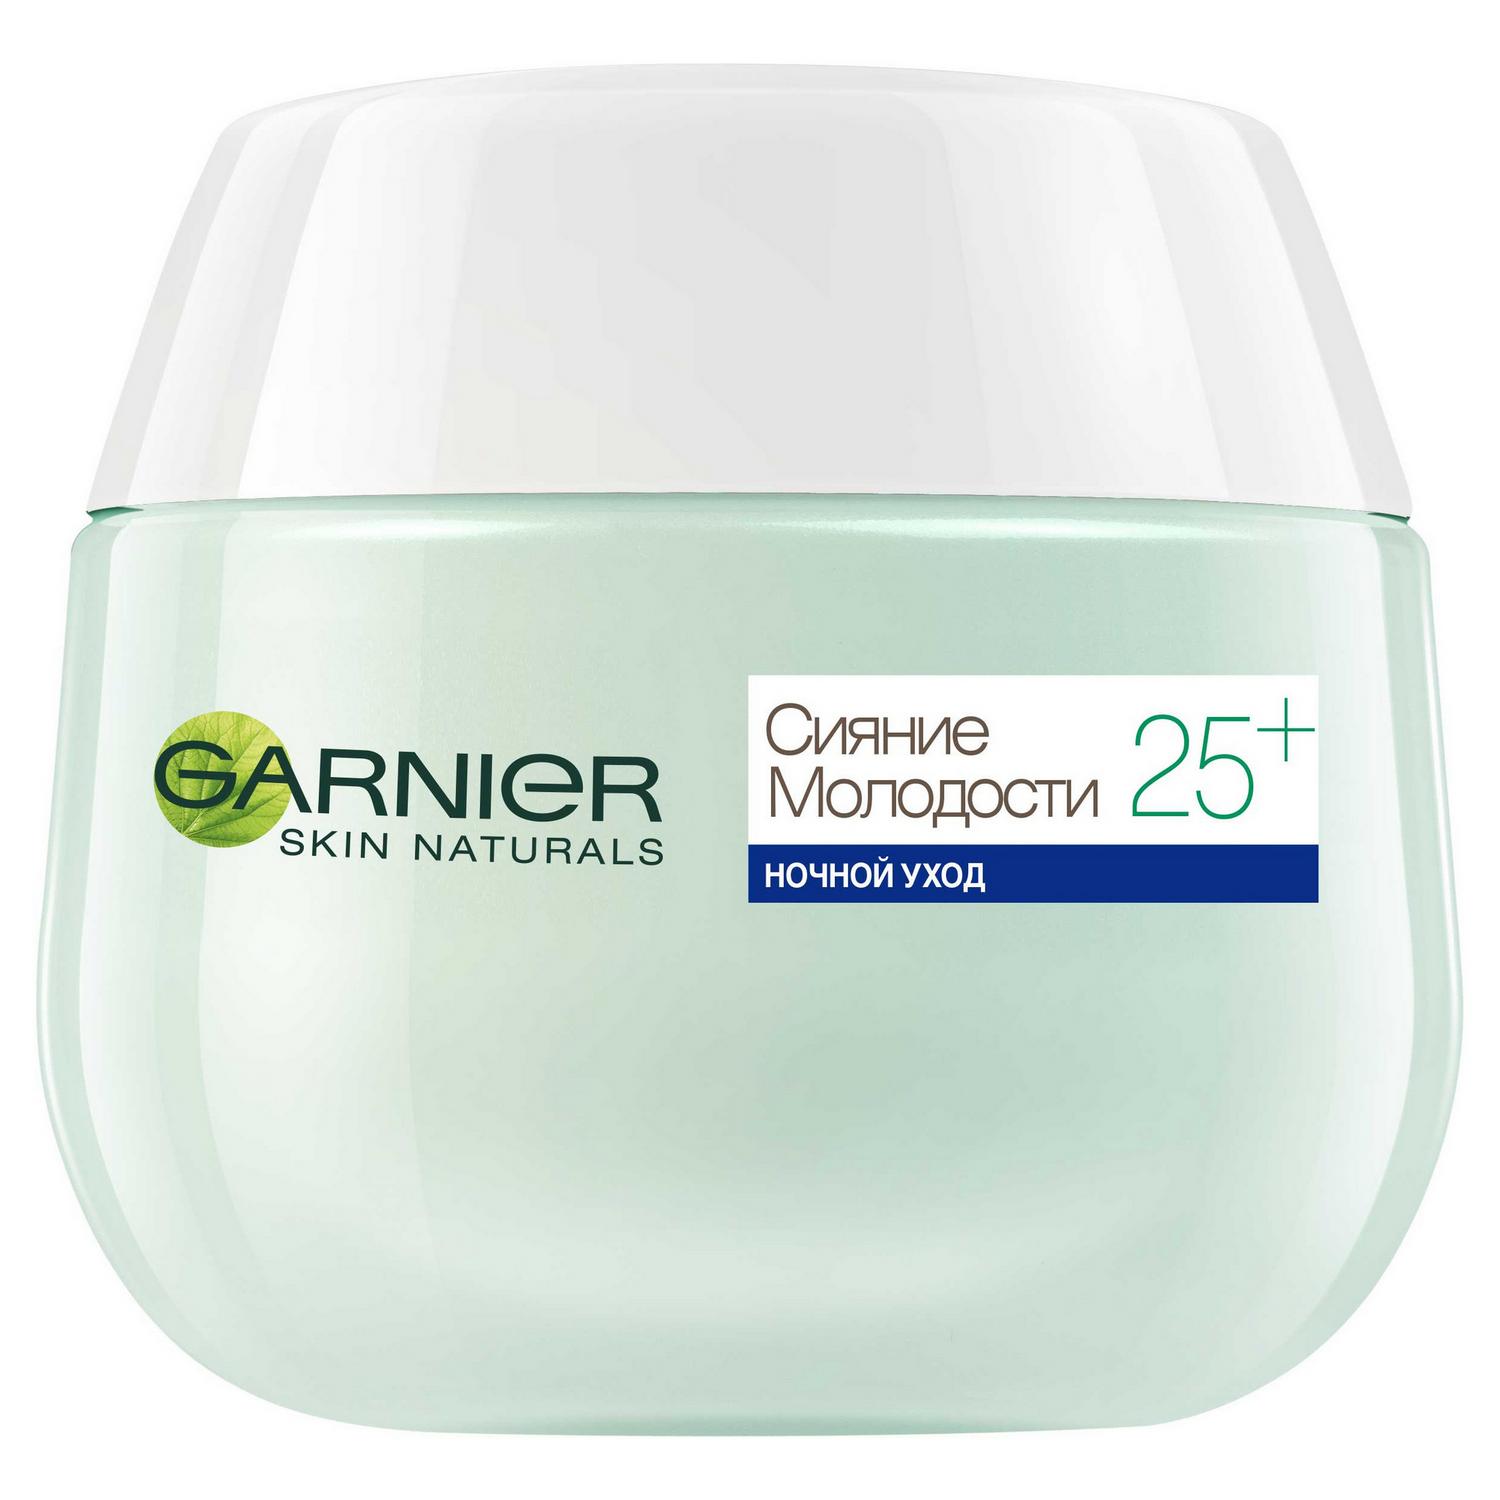 Крем для лица Garnier Skin Naturals Сияние Молодости 25+ ночной уход 50 мл, размер 8x6,6x6,6 см C4929600/6 - фото 4